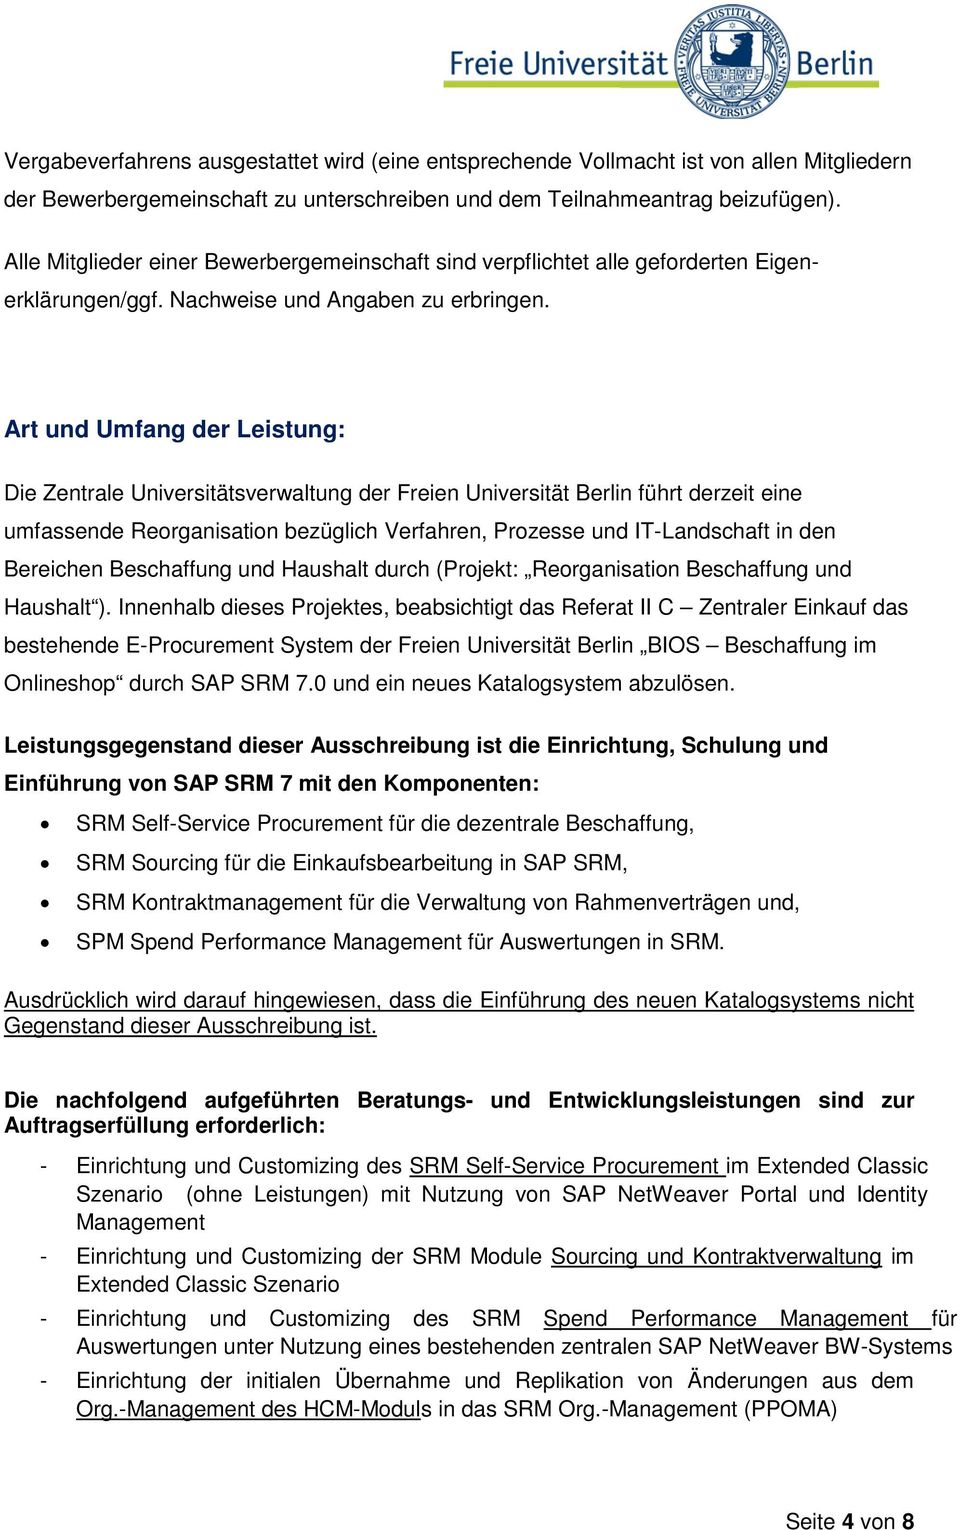 Art und Umfang der Leistung: Die Zentrale Universitätsverwaltung der Freien Universität Berlin führt derzeit eine umfassende Reorganisation bezüglich Verfahren, Prozesse und IT-Landschaft in den